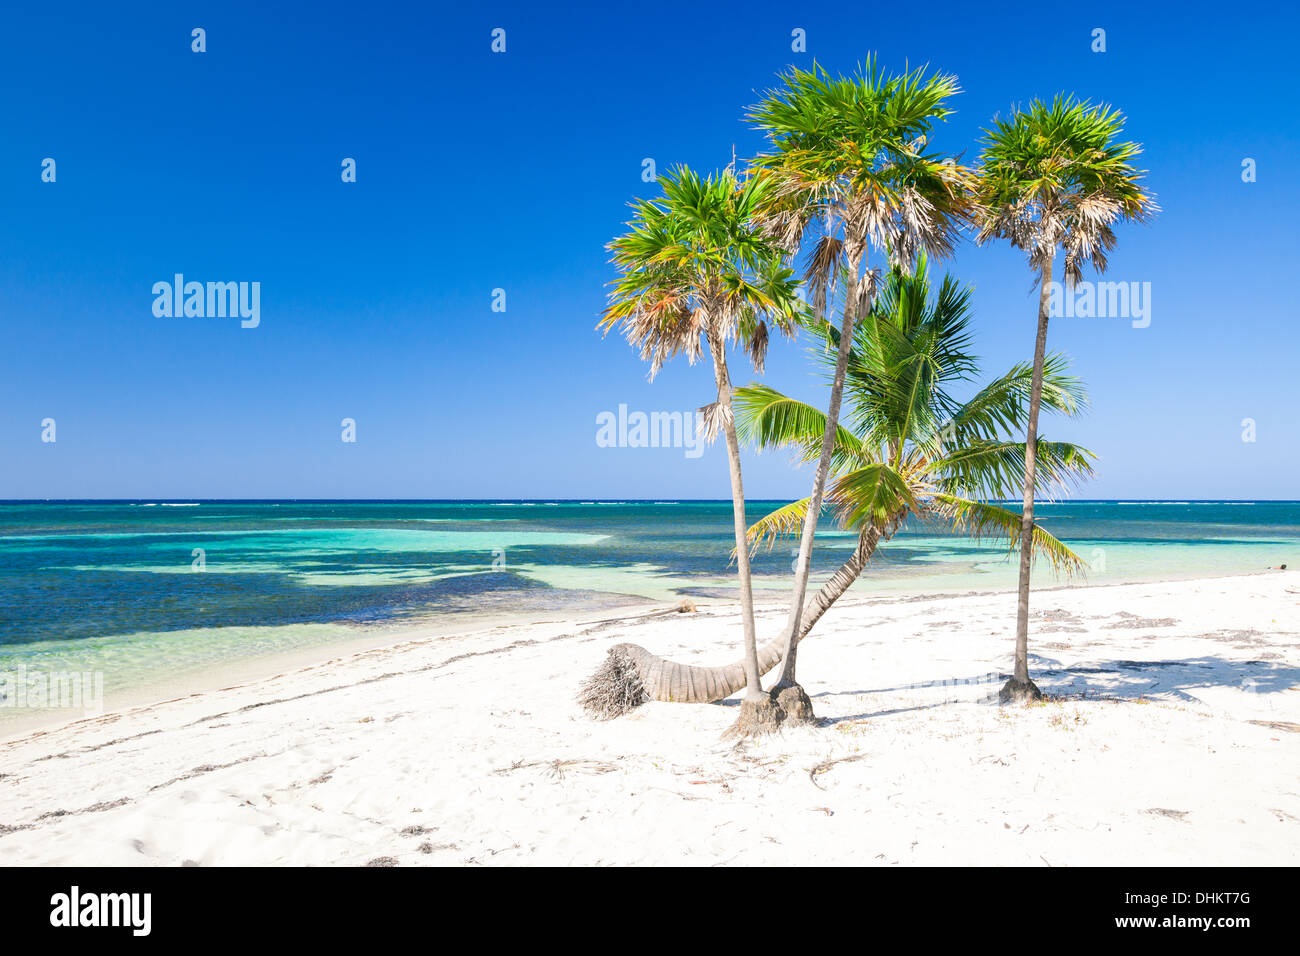 Las palmeras en la playa caribeña tropical Foto de stock